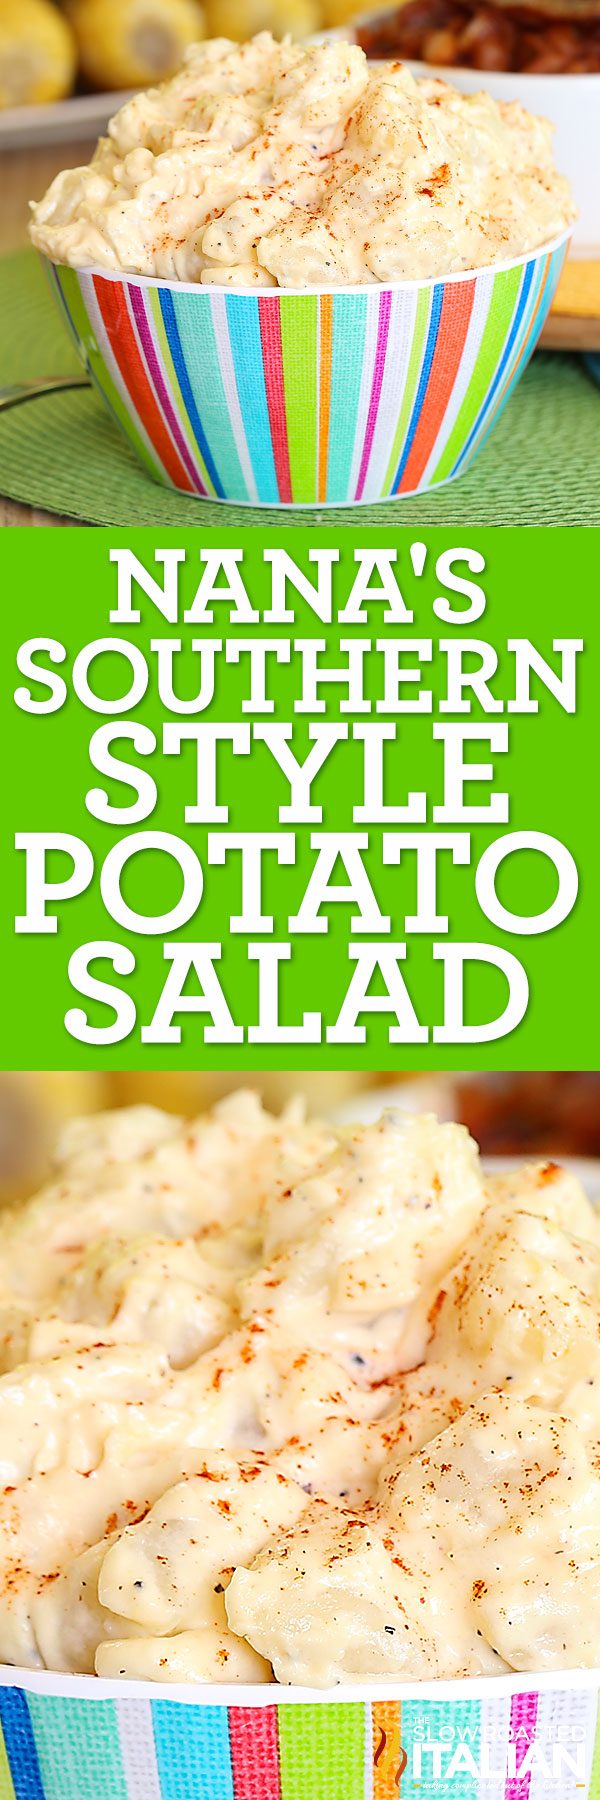 nanas-southern-style-potato-salad-pin-4496850